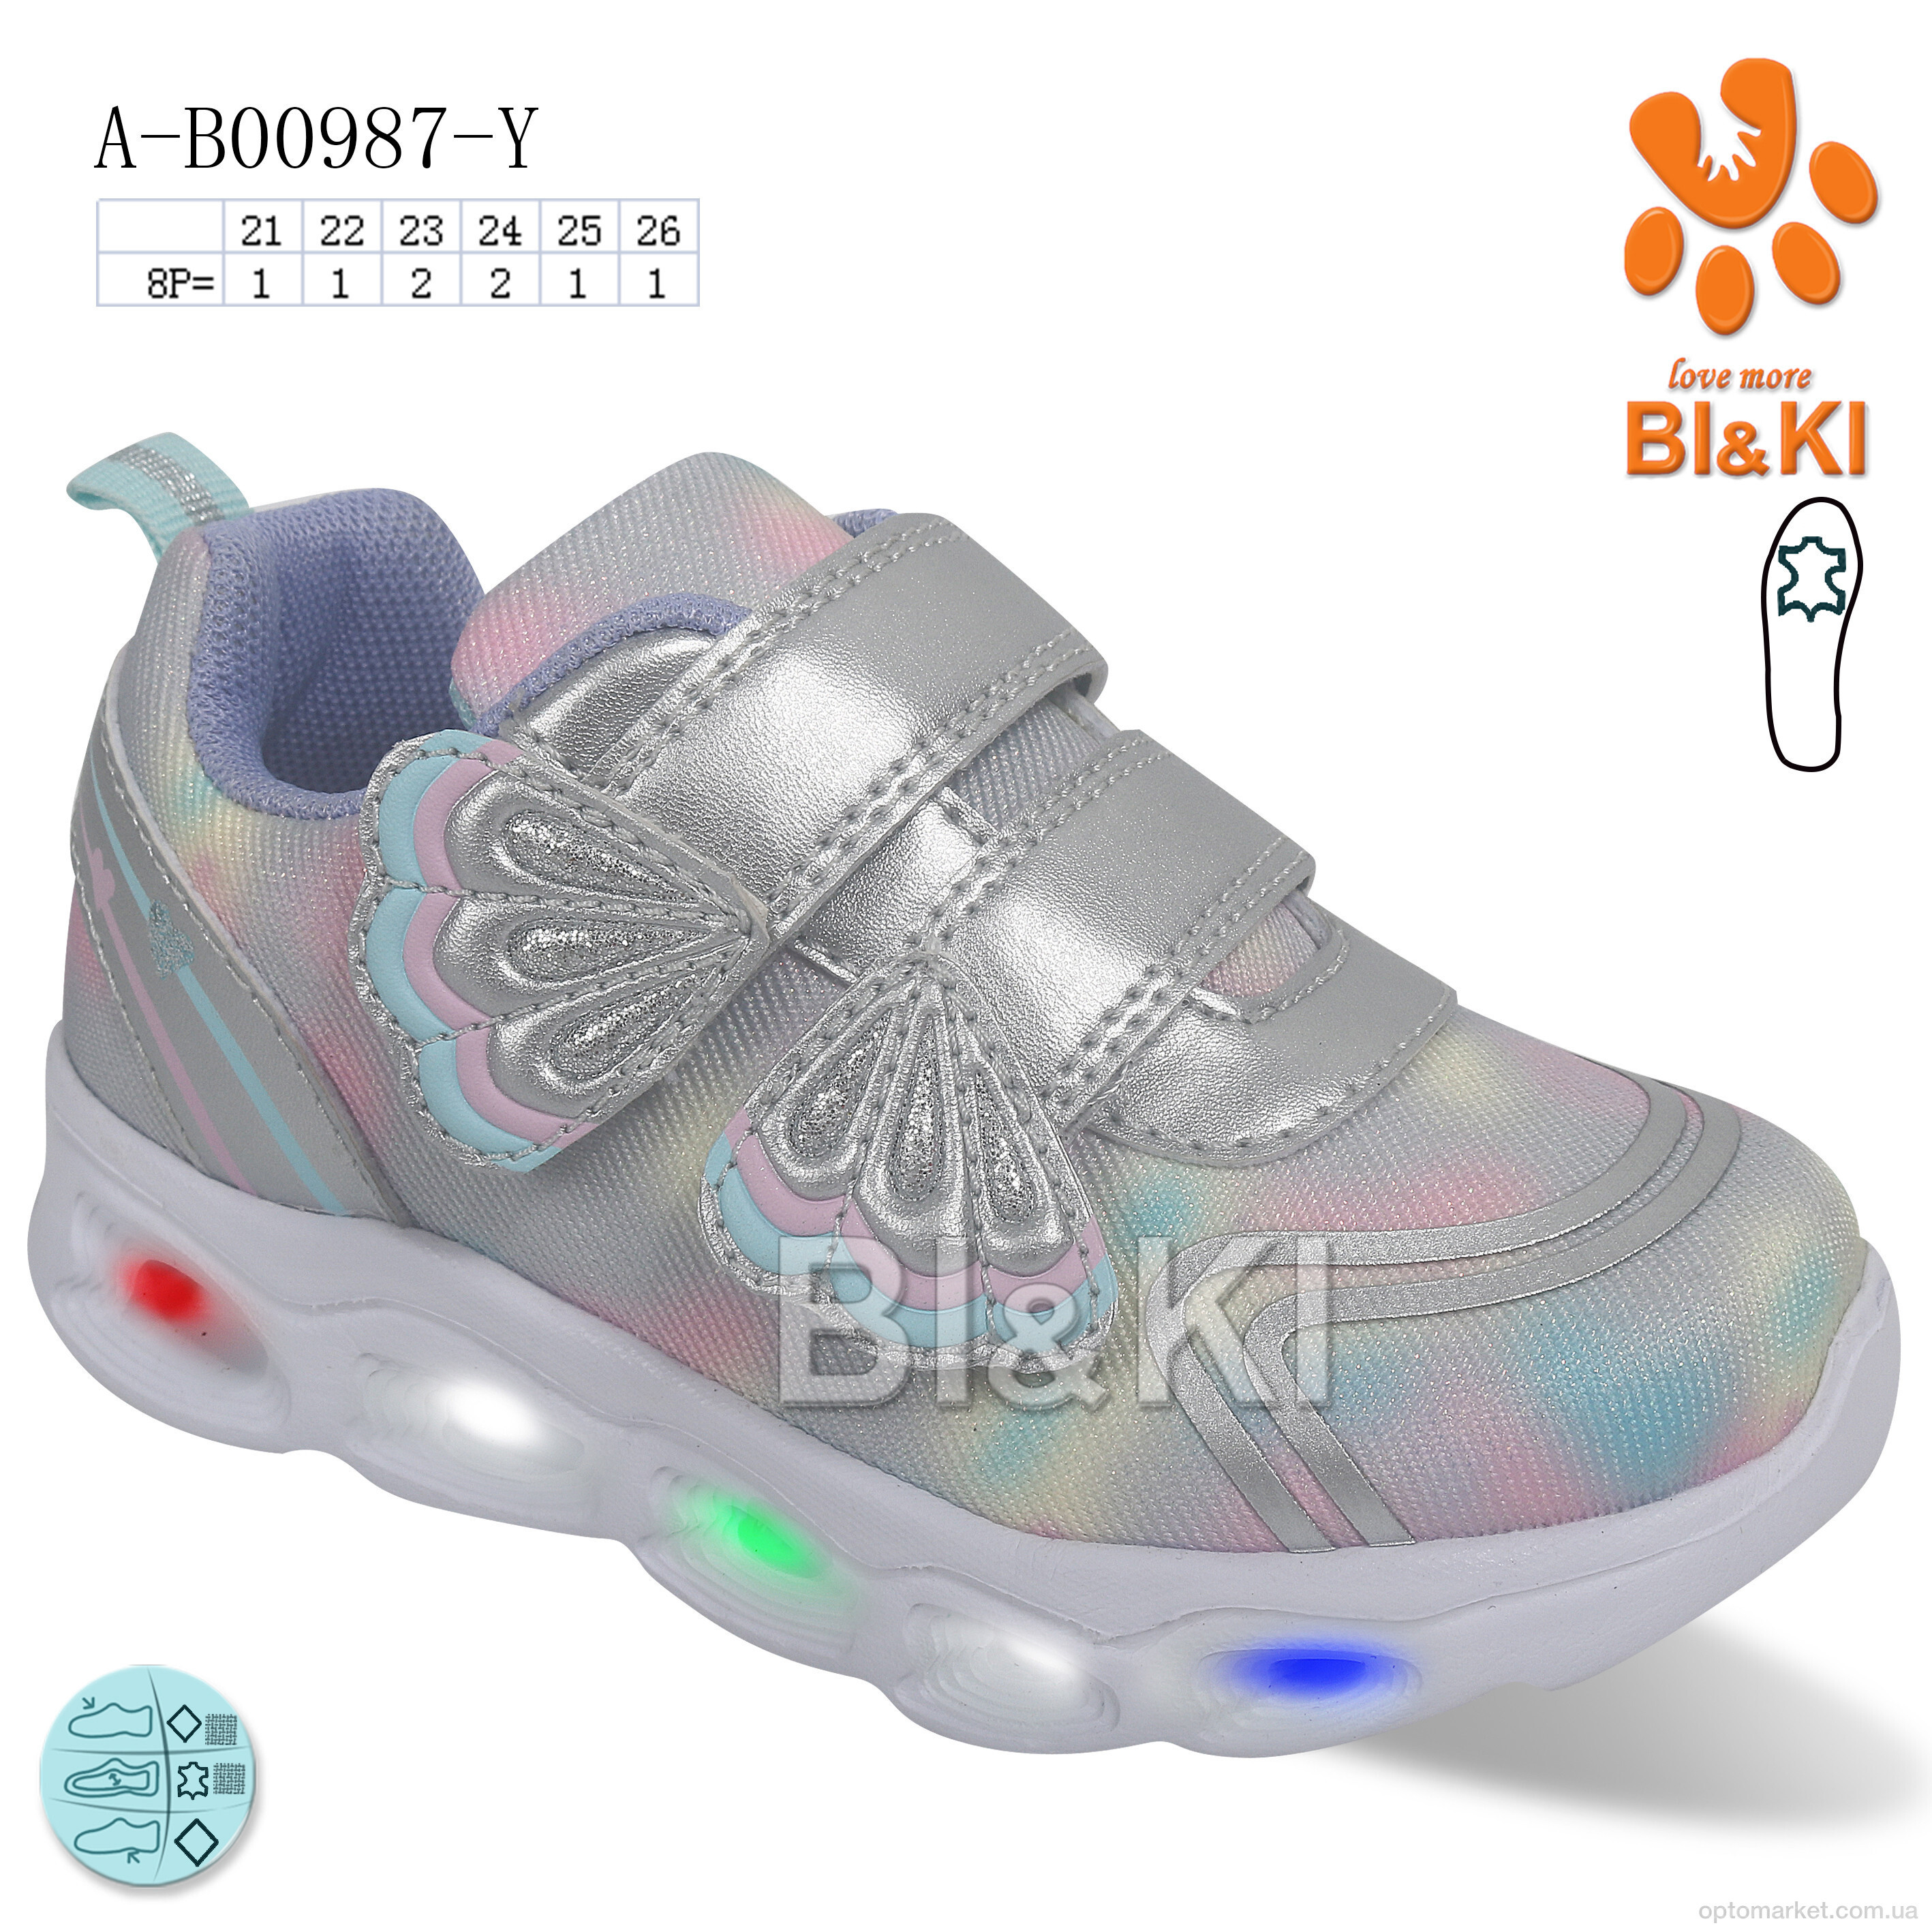 Купить Кросівки дитячі A-B00987-Y LED Bi&Ki срібний, фото 1